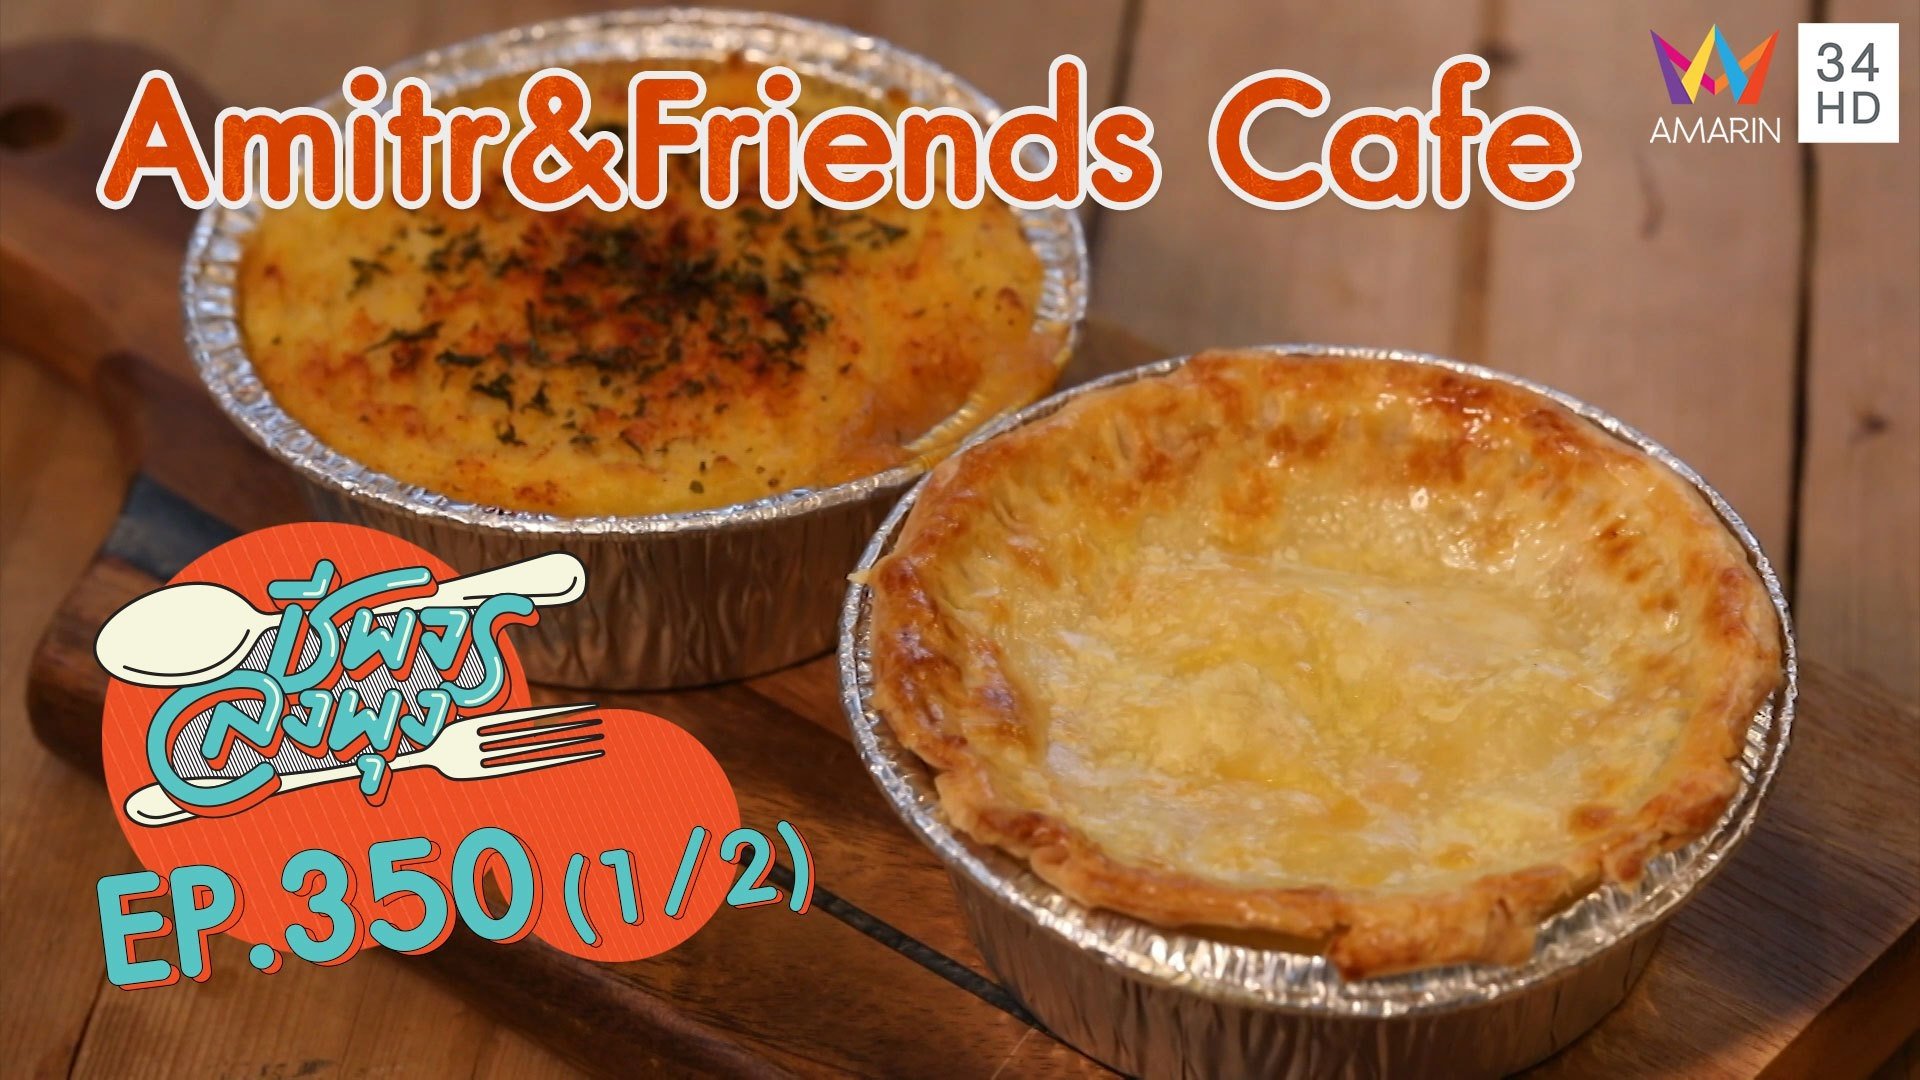 พายไก่สูตรเด็ด อร่อยมาก @ ร้าน Amitr&Friends Cafe | ชีพจรลงพุง | 12 ธ.ค. 64 (1/2) | AMARIN TVHD34